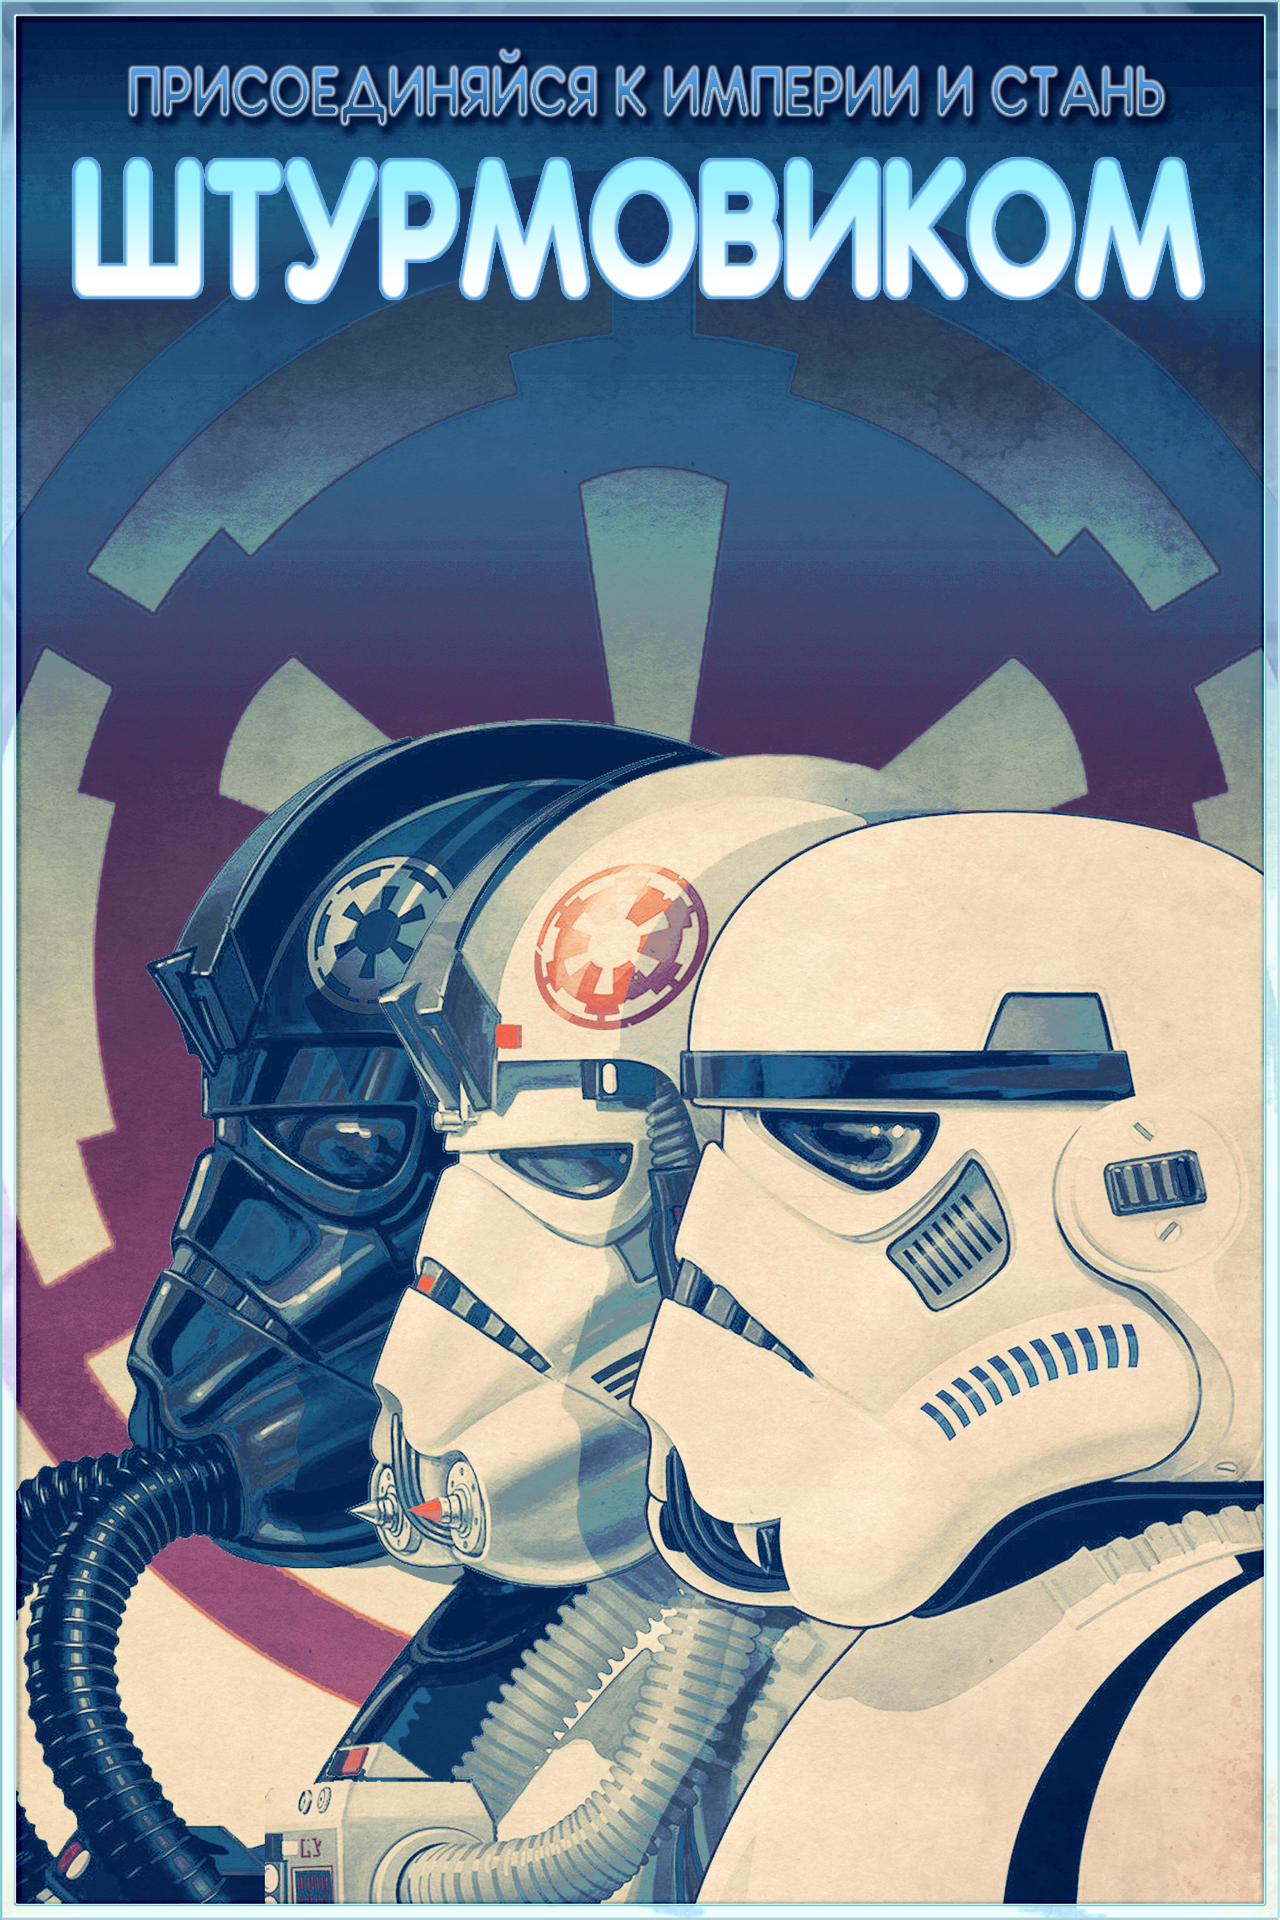 Star Wars propaganda posters - Star Wars, Propaganda poster, Propaganda, Translation, Longpost